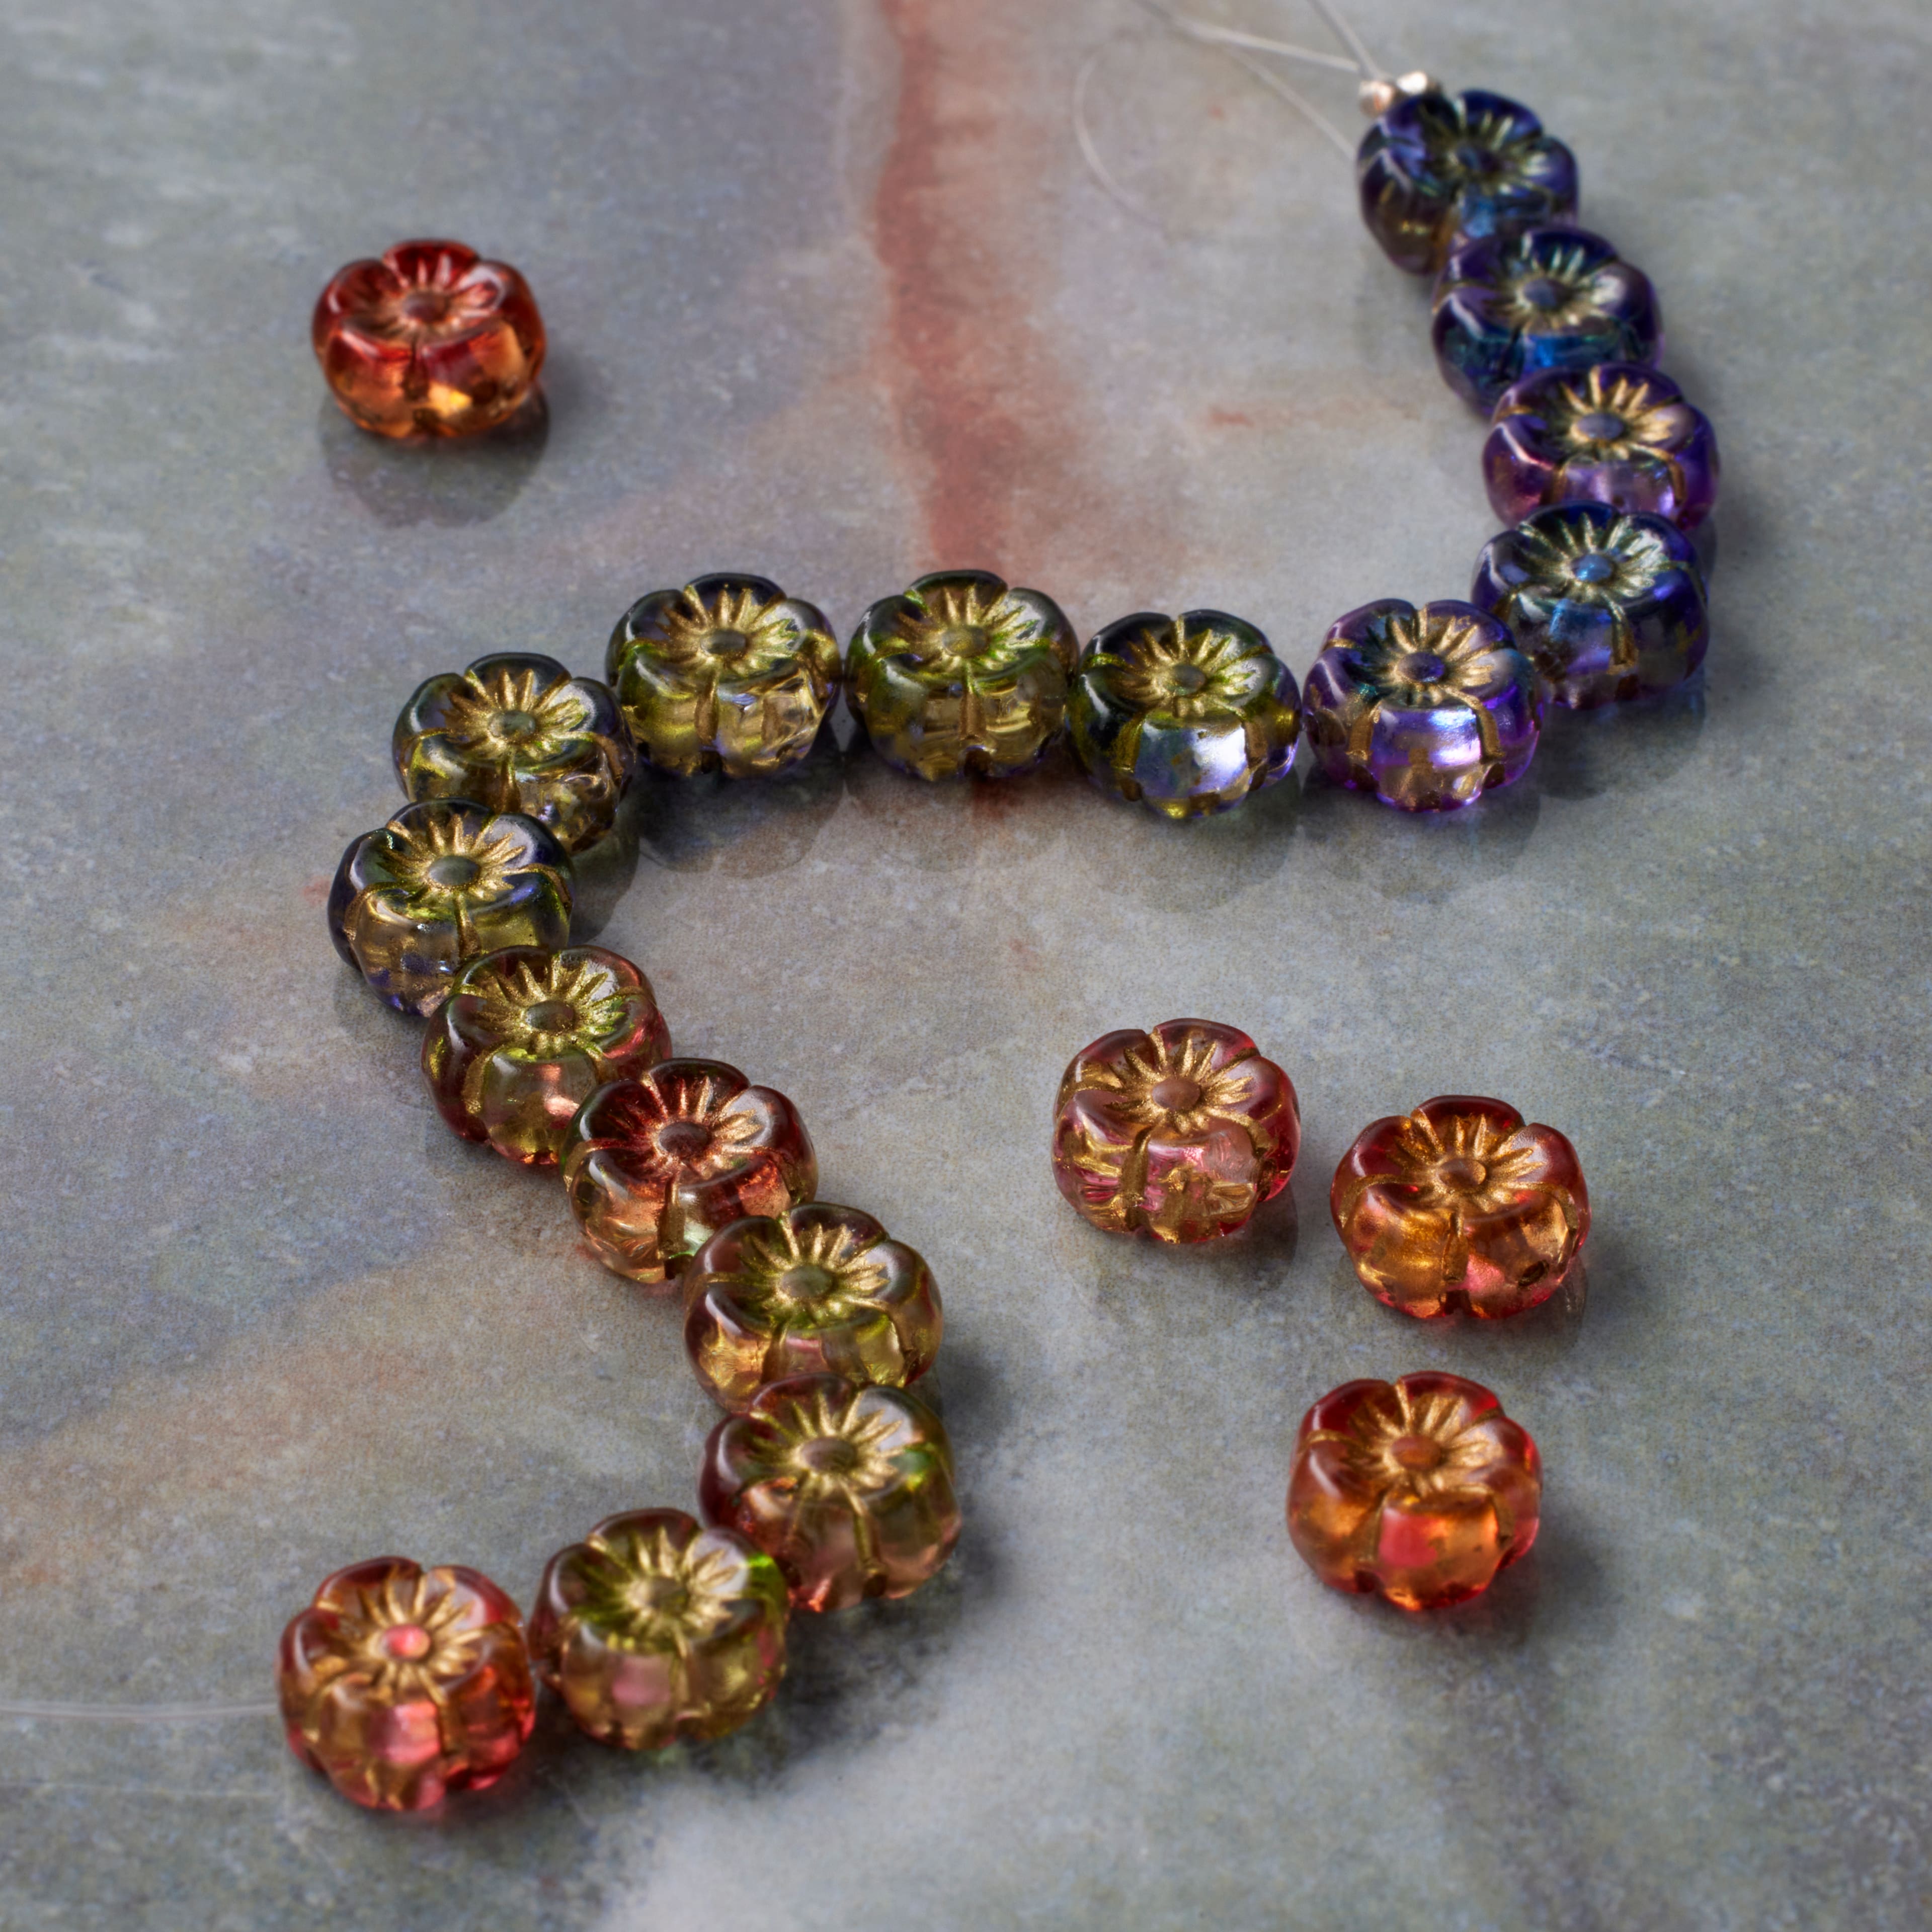 6 Packs: 20 ct. (120 total) Sun Daisies Czech Glass Flower Beads, 8.6mm by Bead Landing&#x2122;